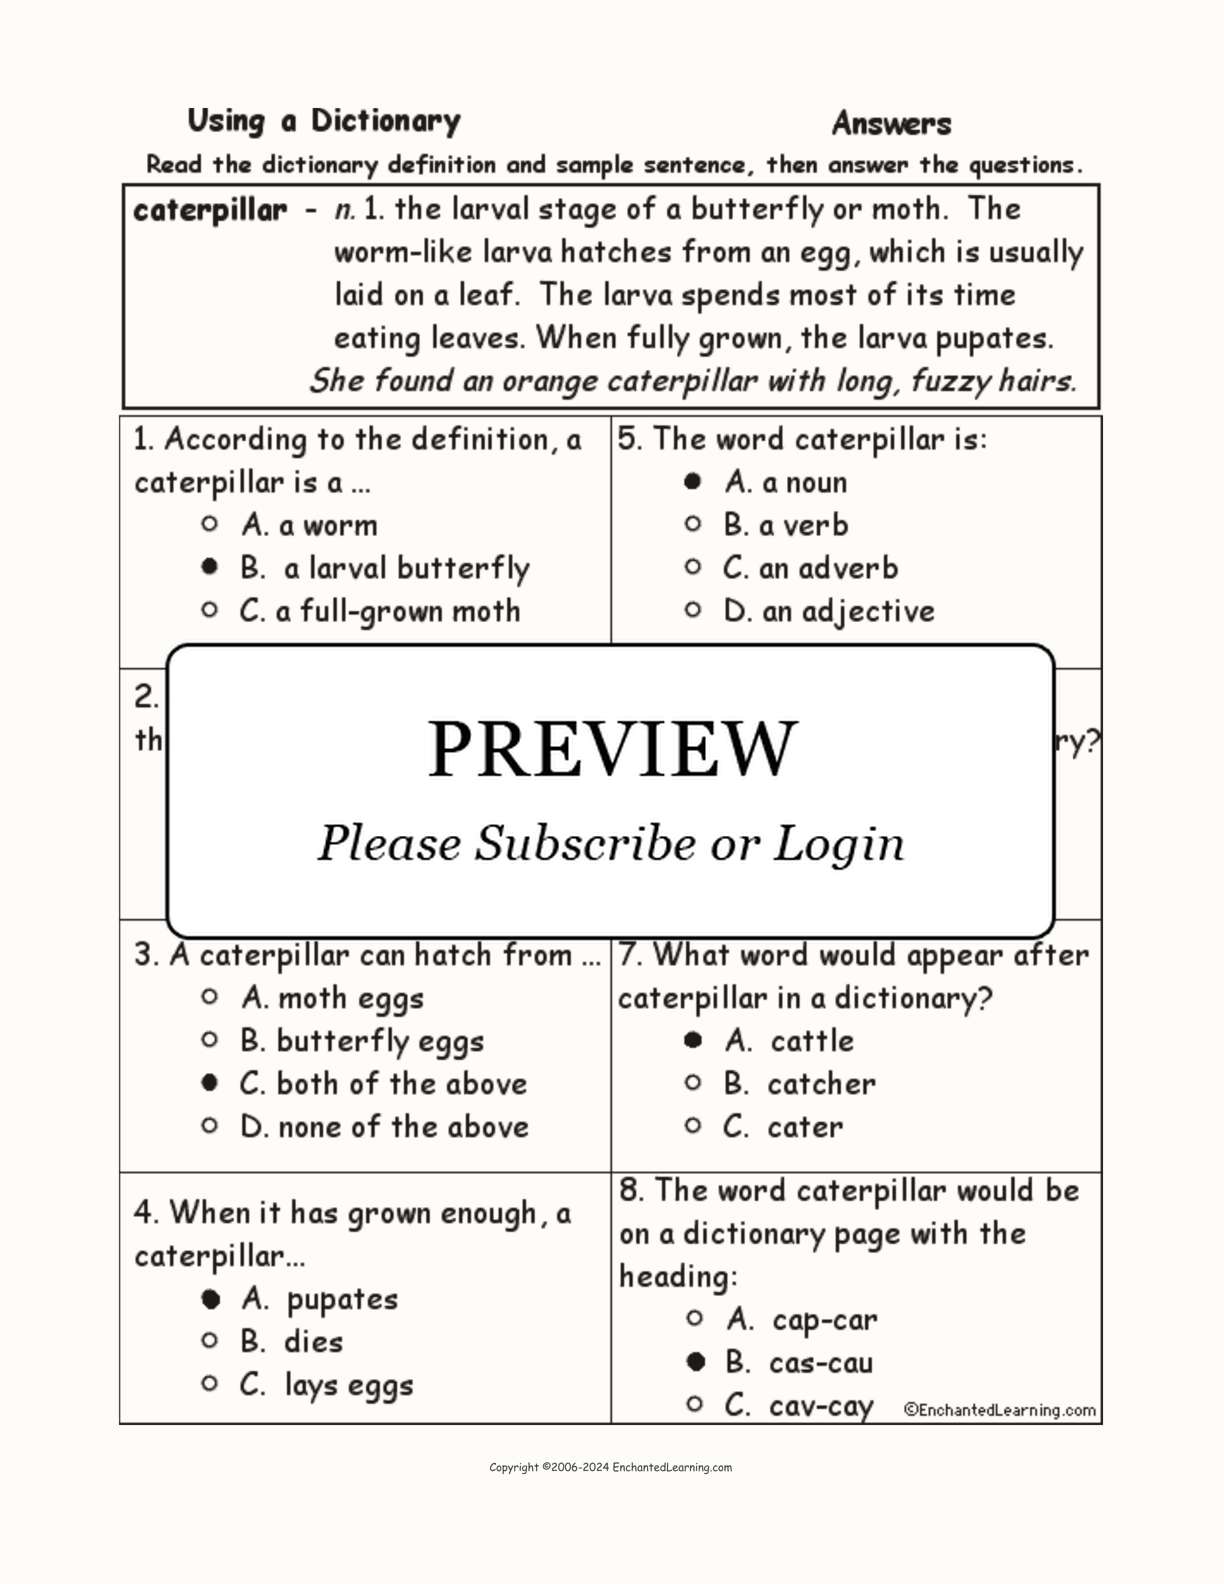 Caterpillar Definition Quiz interactive worksheet page 2